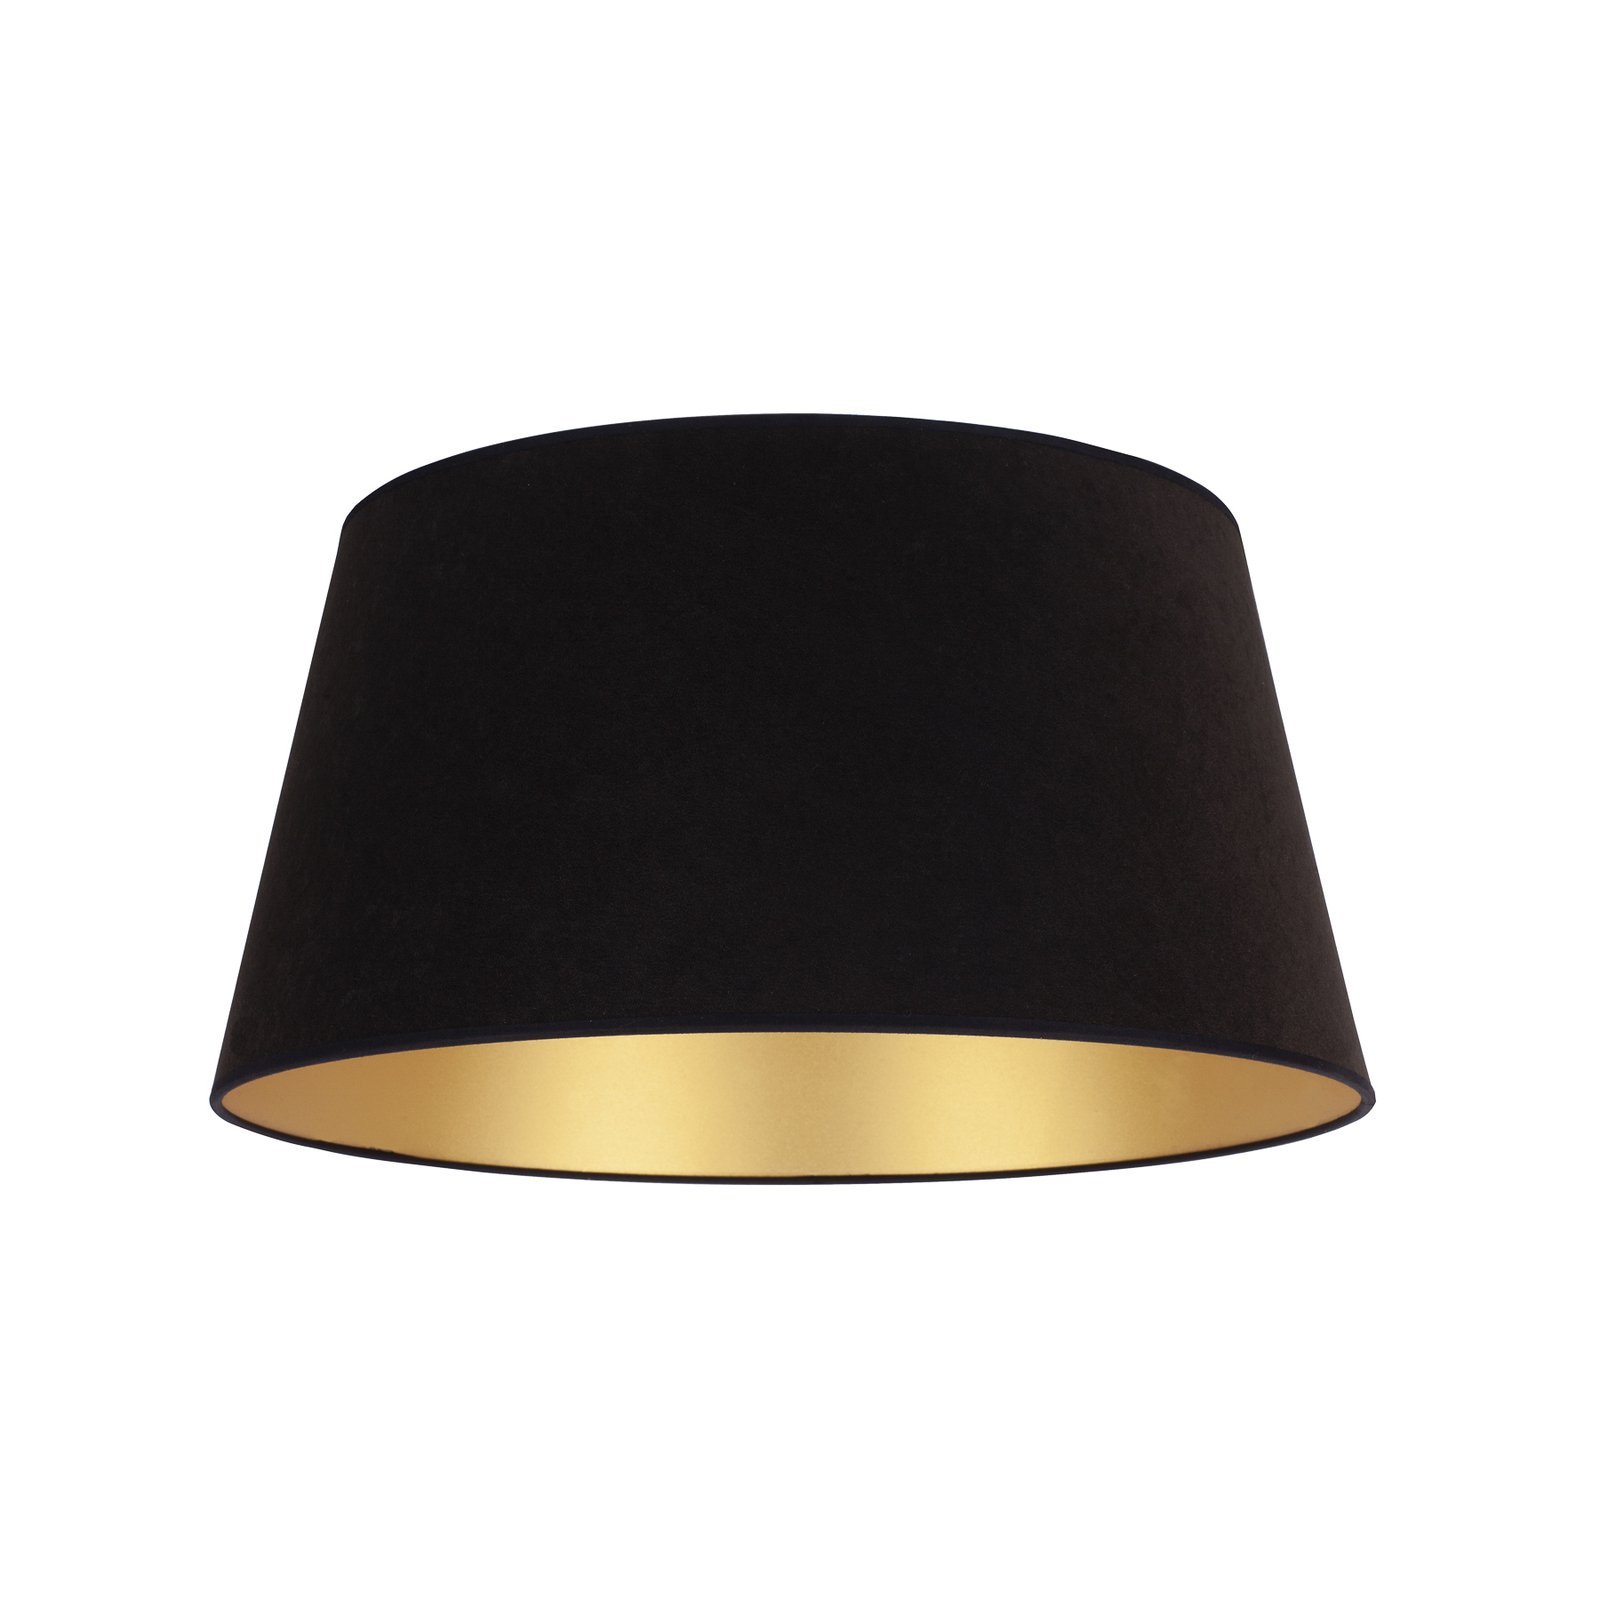 Lampenschirm Cone Höhe 22,5 cm, schwarz/gold